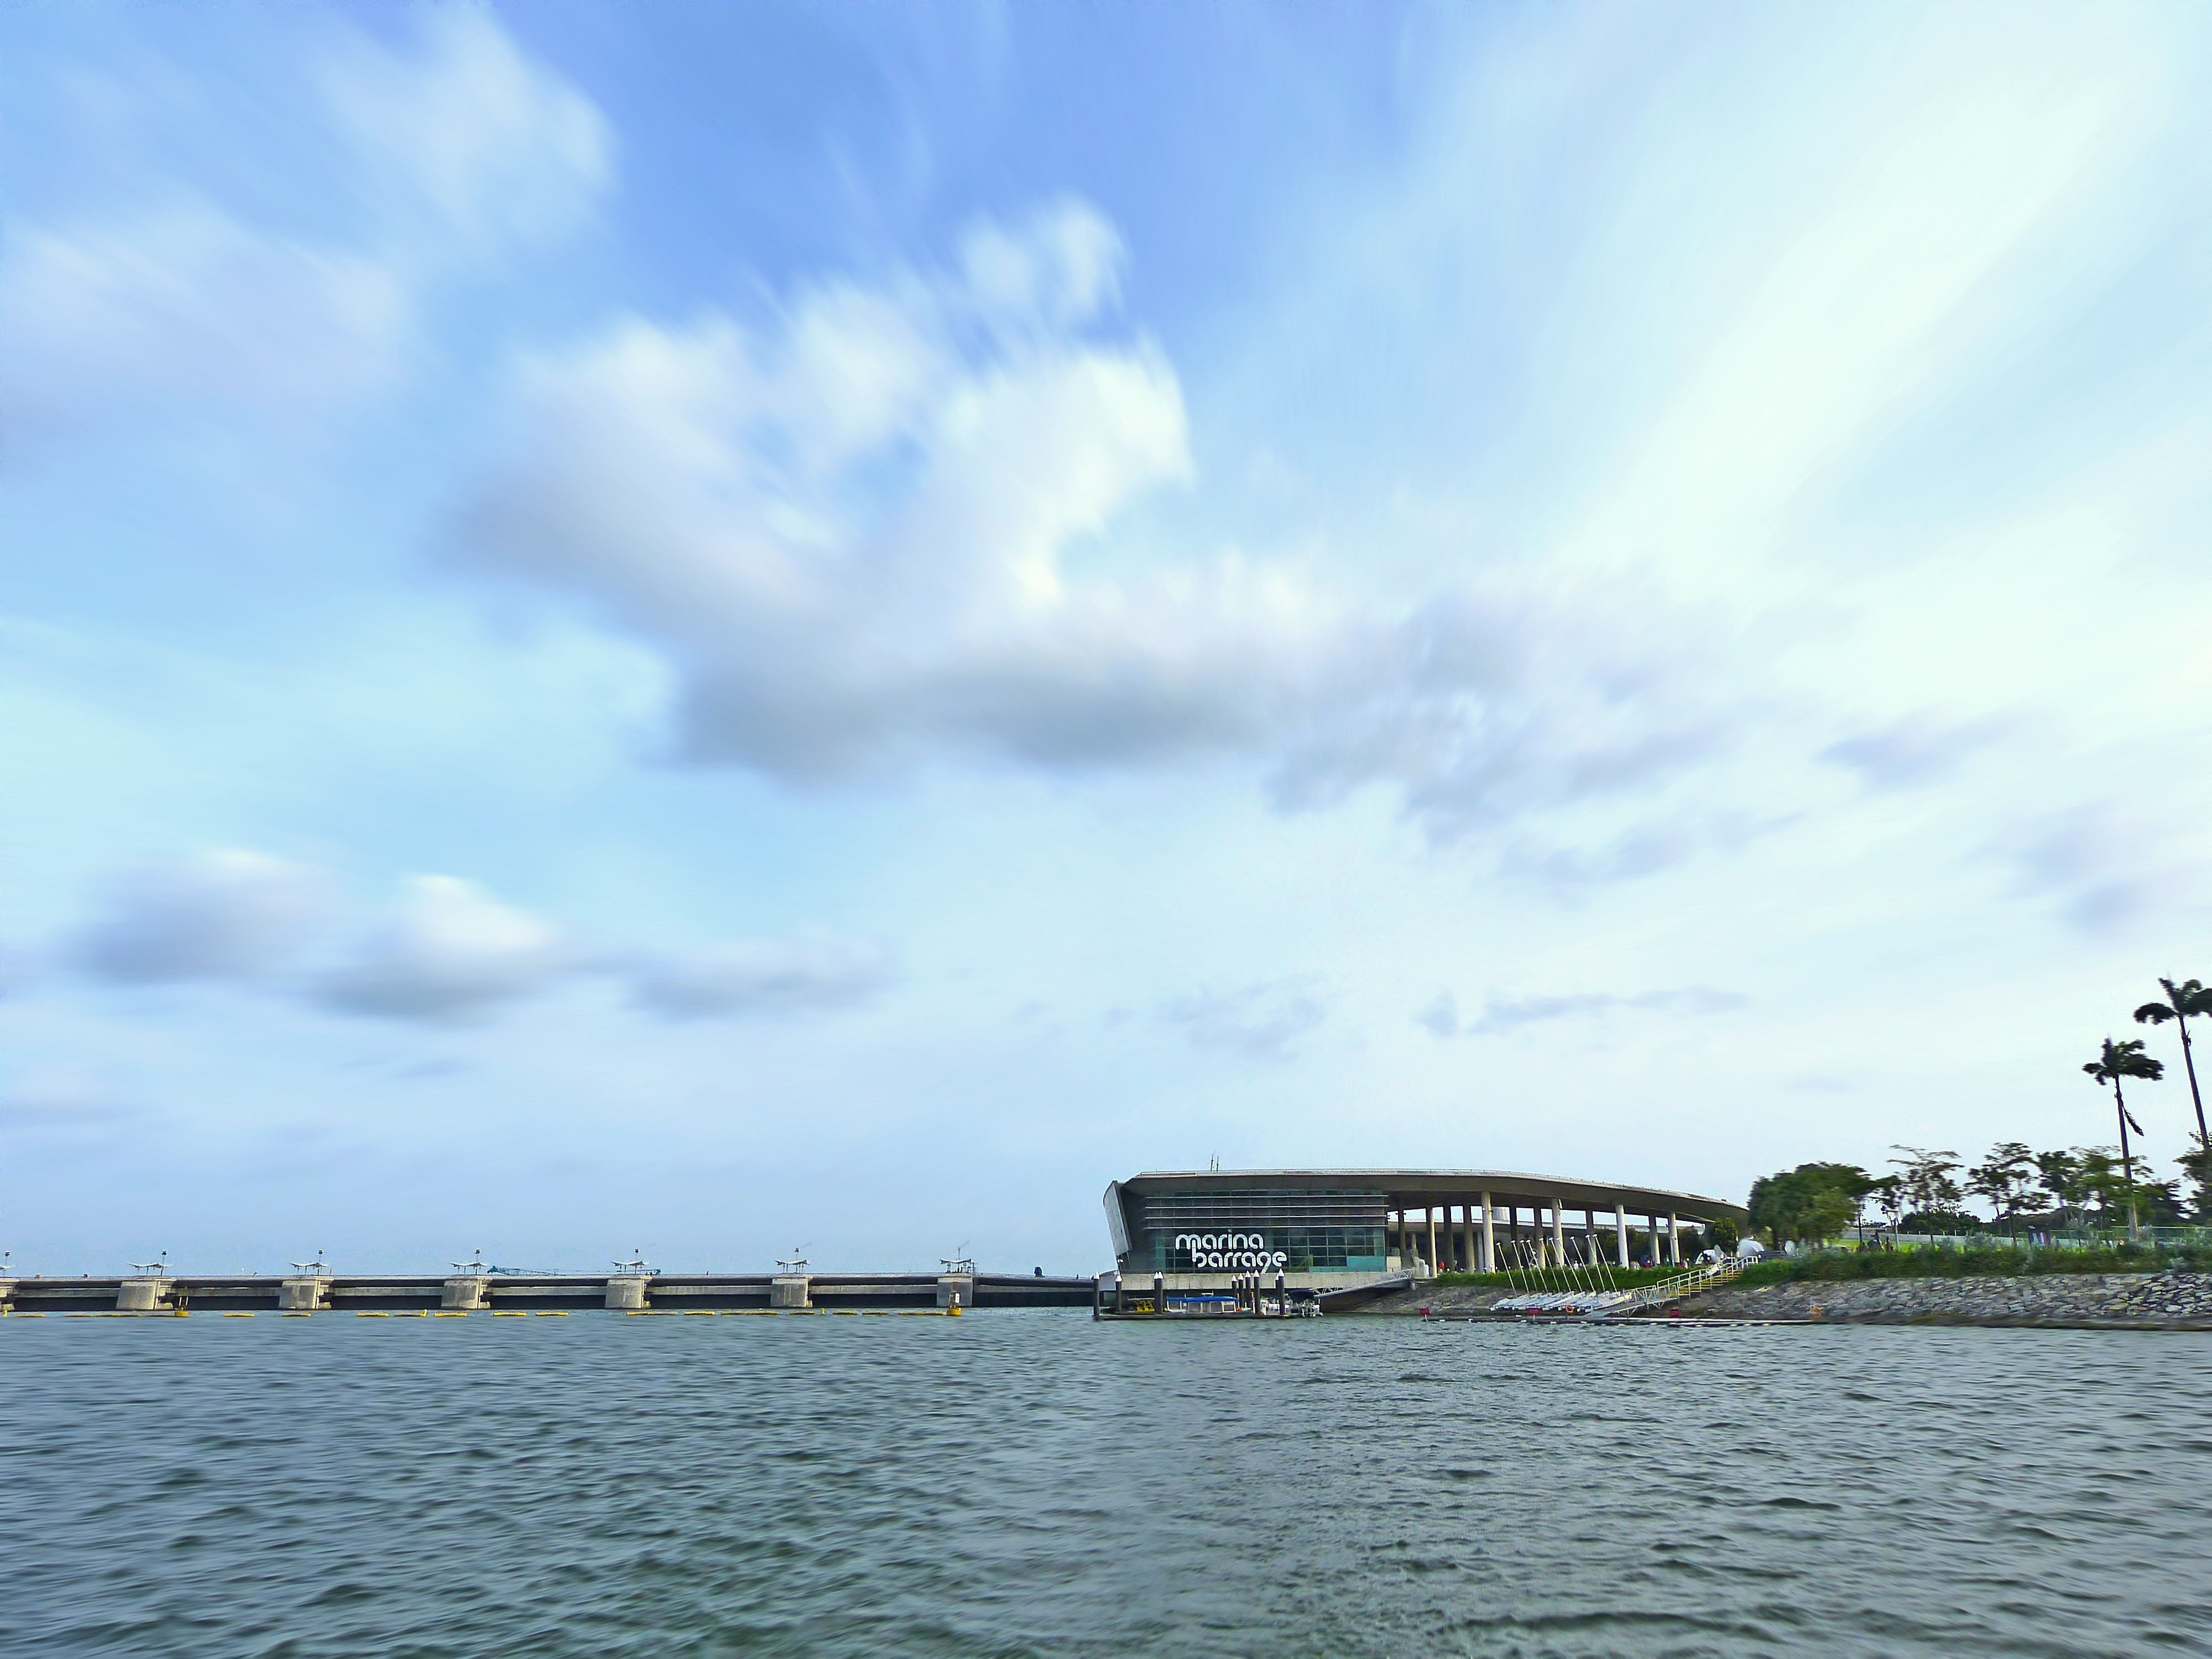 Đập nước Marina Barrage - Marina Barrage - Singapore - Singapore